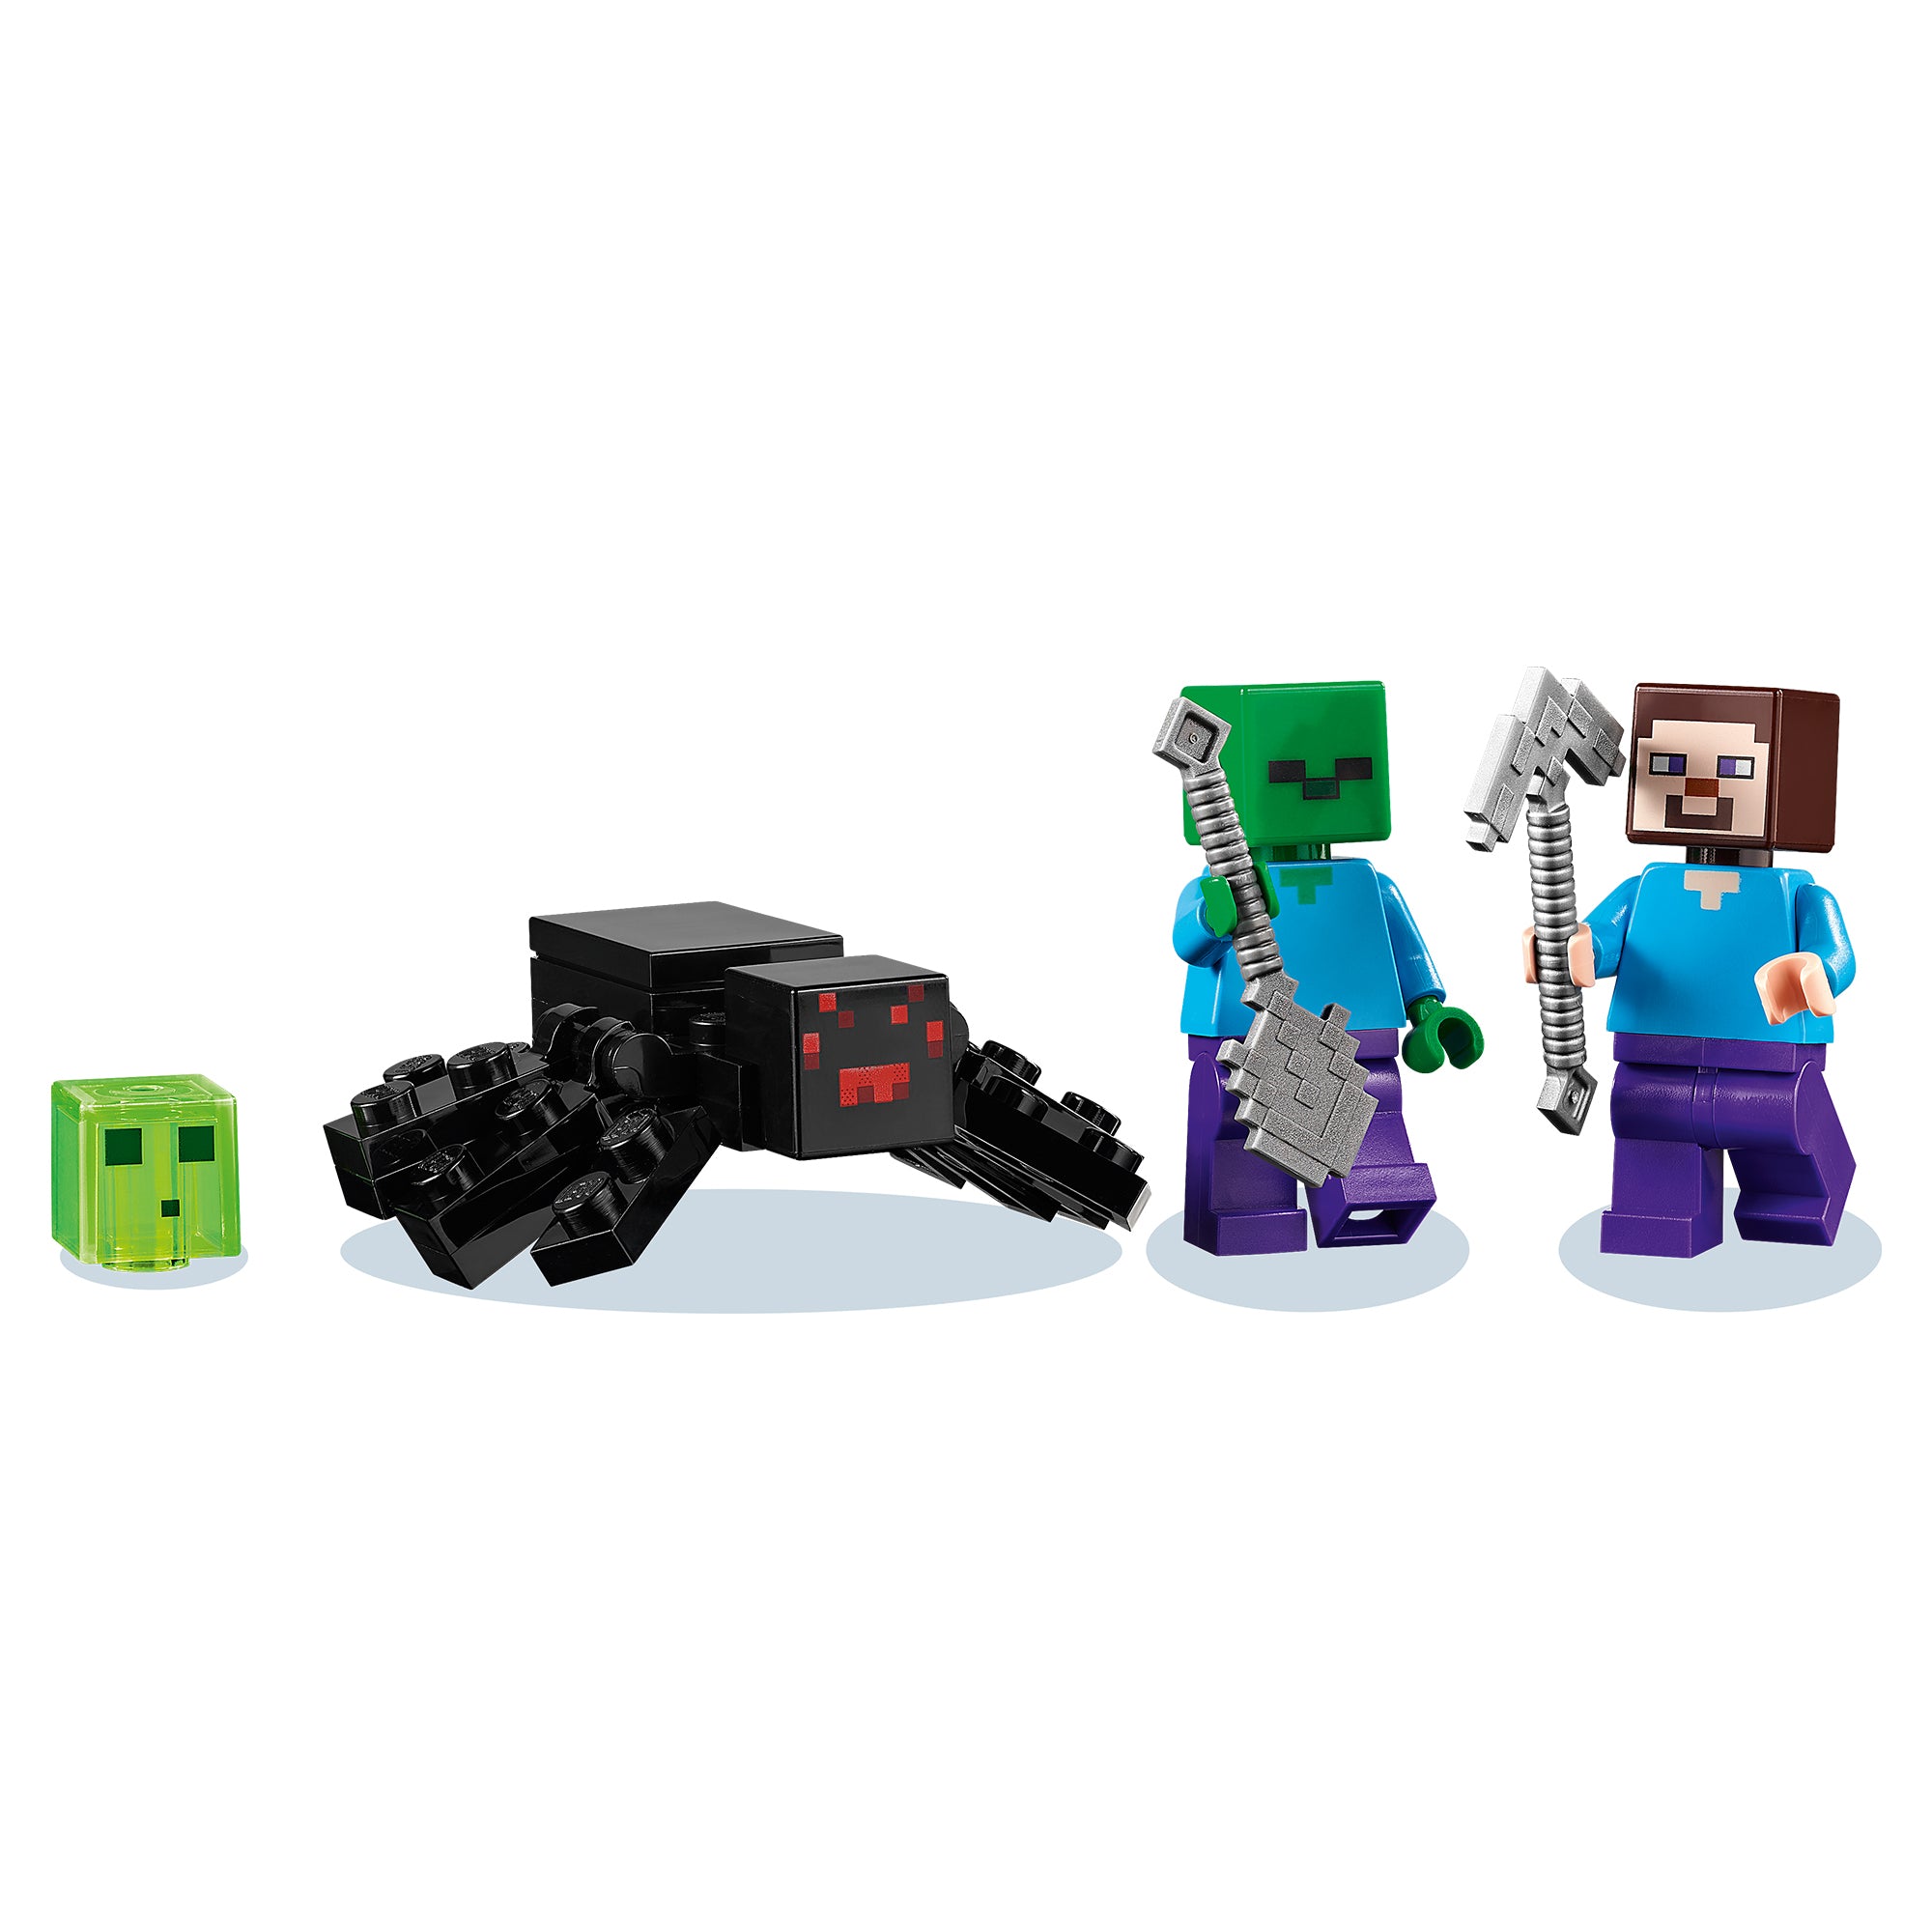 21166 LEGO® Minecraft - La miniera abbandonata